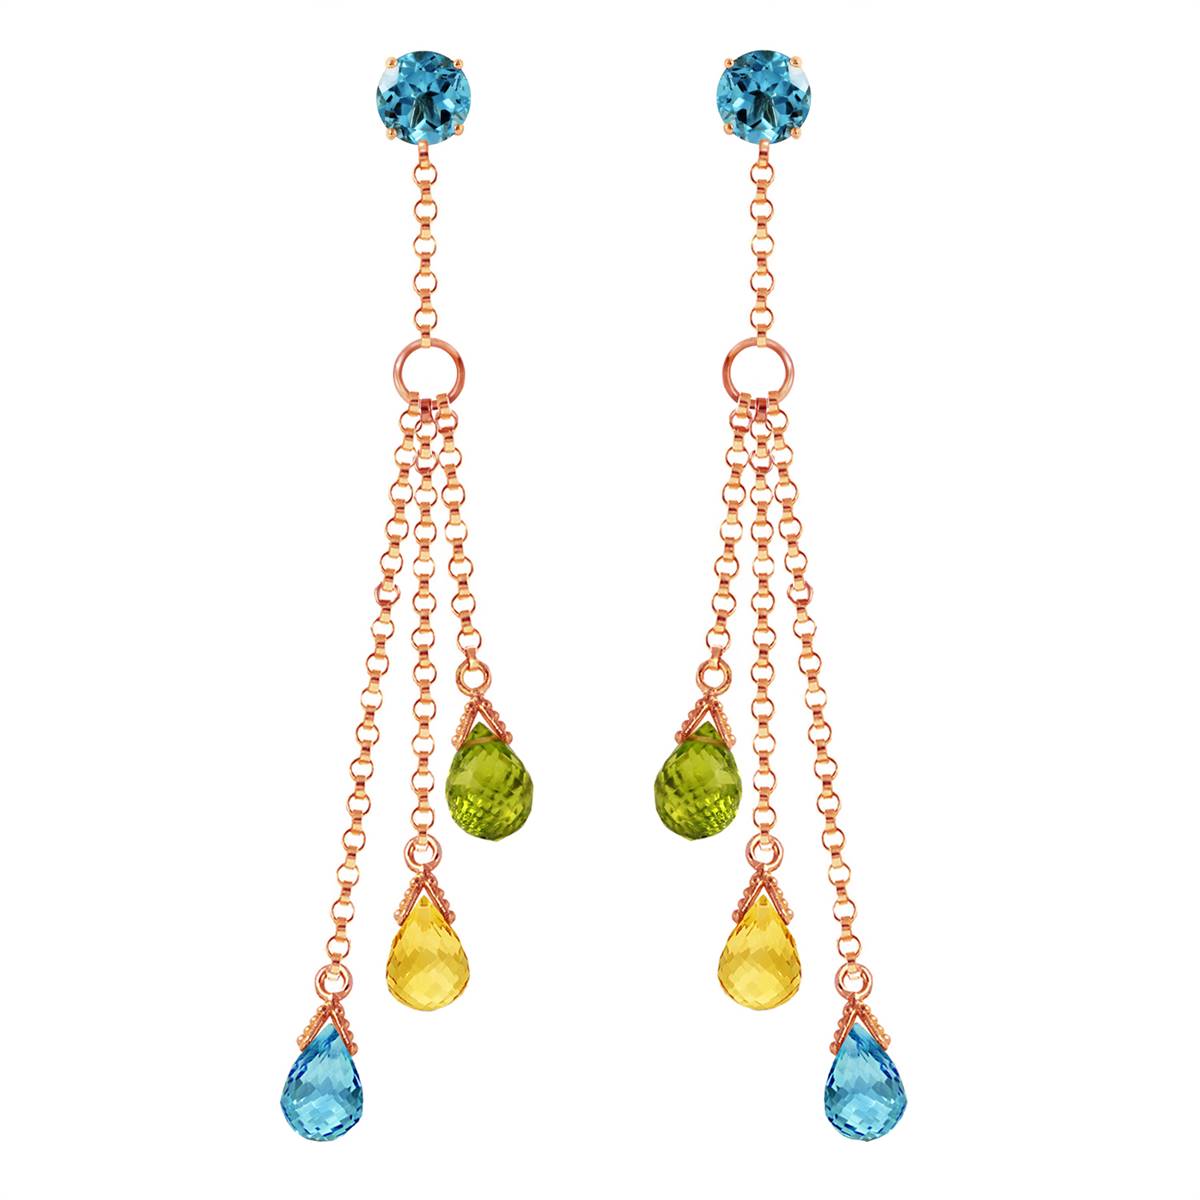 14K Solid Rose Gold Chandelier Earrings w/ Blue Topaz, Citrines & Peridots